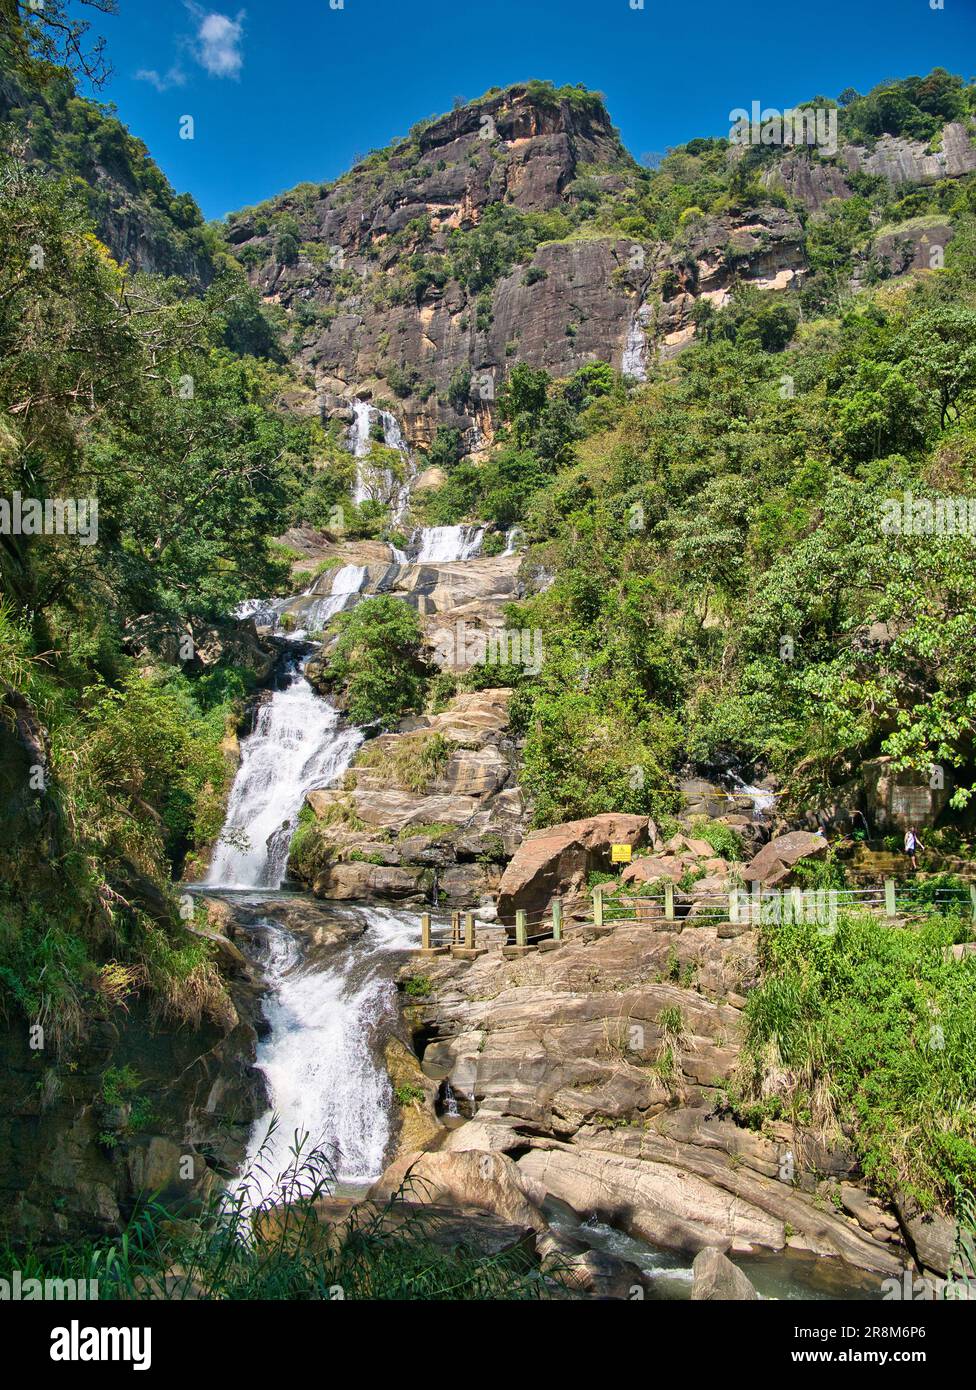 Le cascate Ravana vicino a Ella, nel centro dello Sri Lanka, una popolare attrazione turistica. Attualmente si classifica come una delle più ampie cadute del paese. Foto Stock